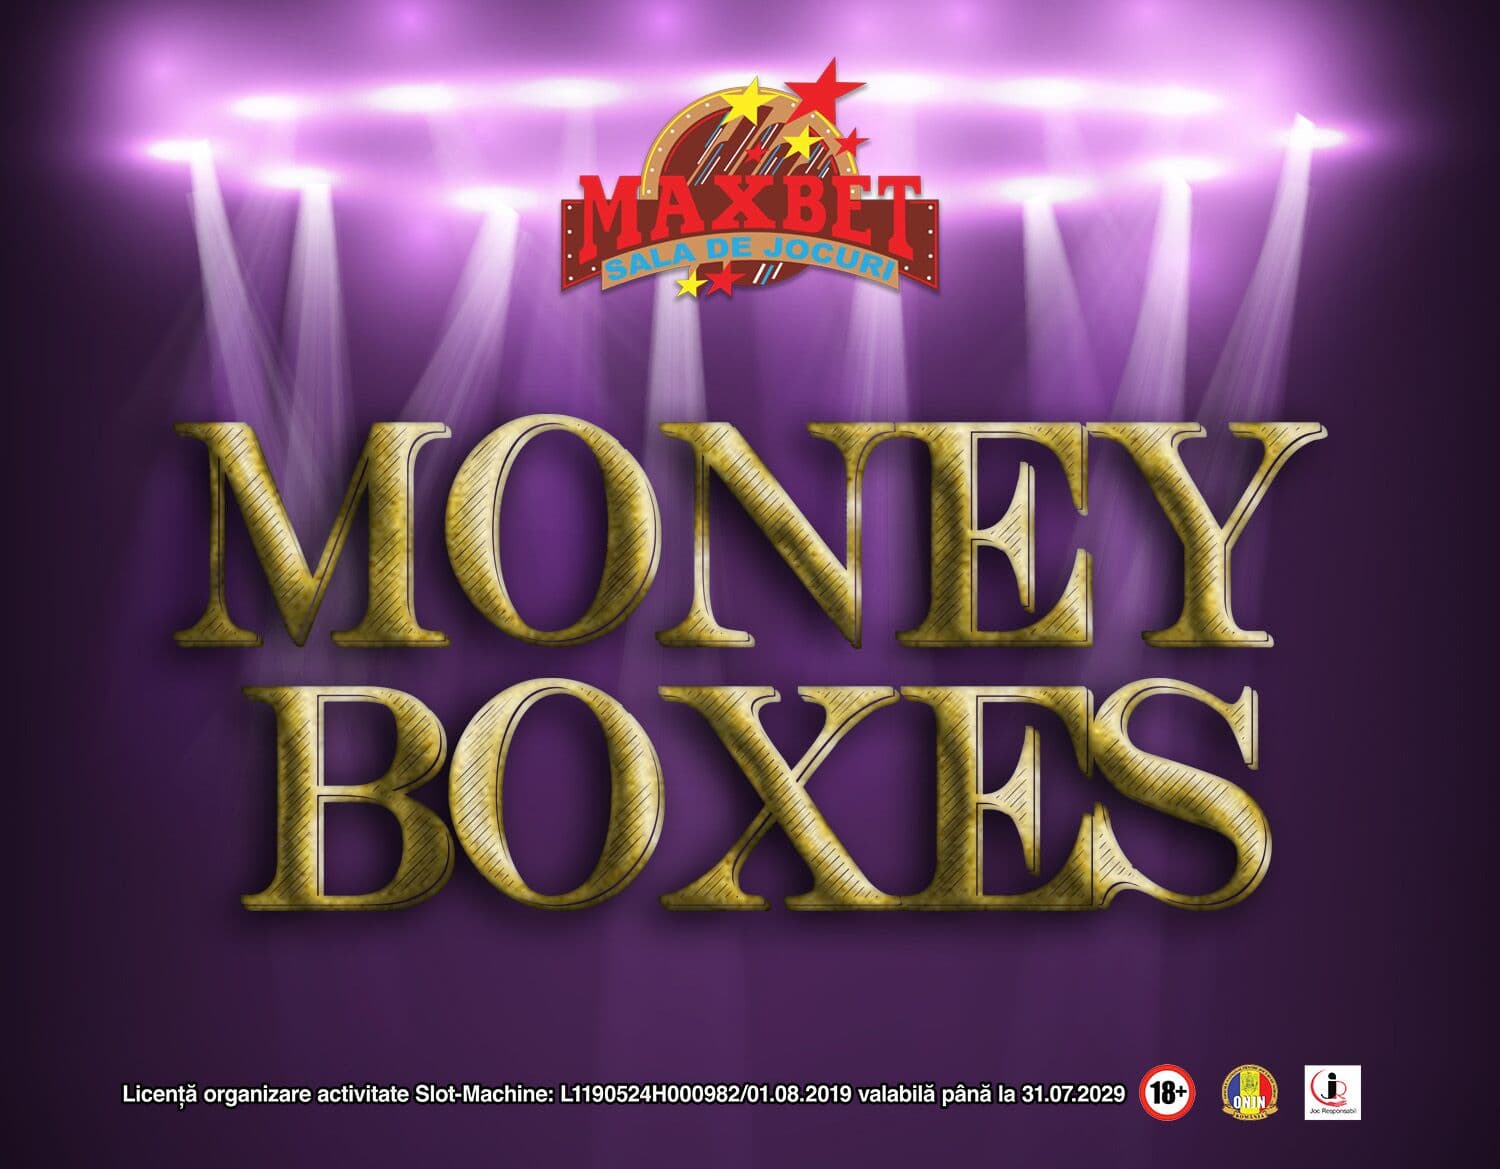 Money Boxes